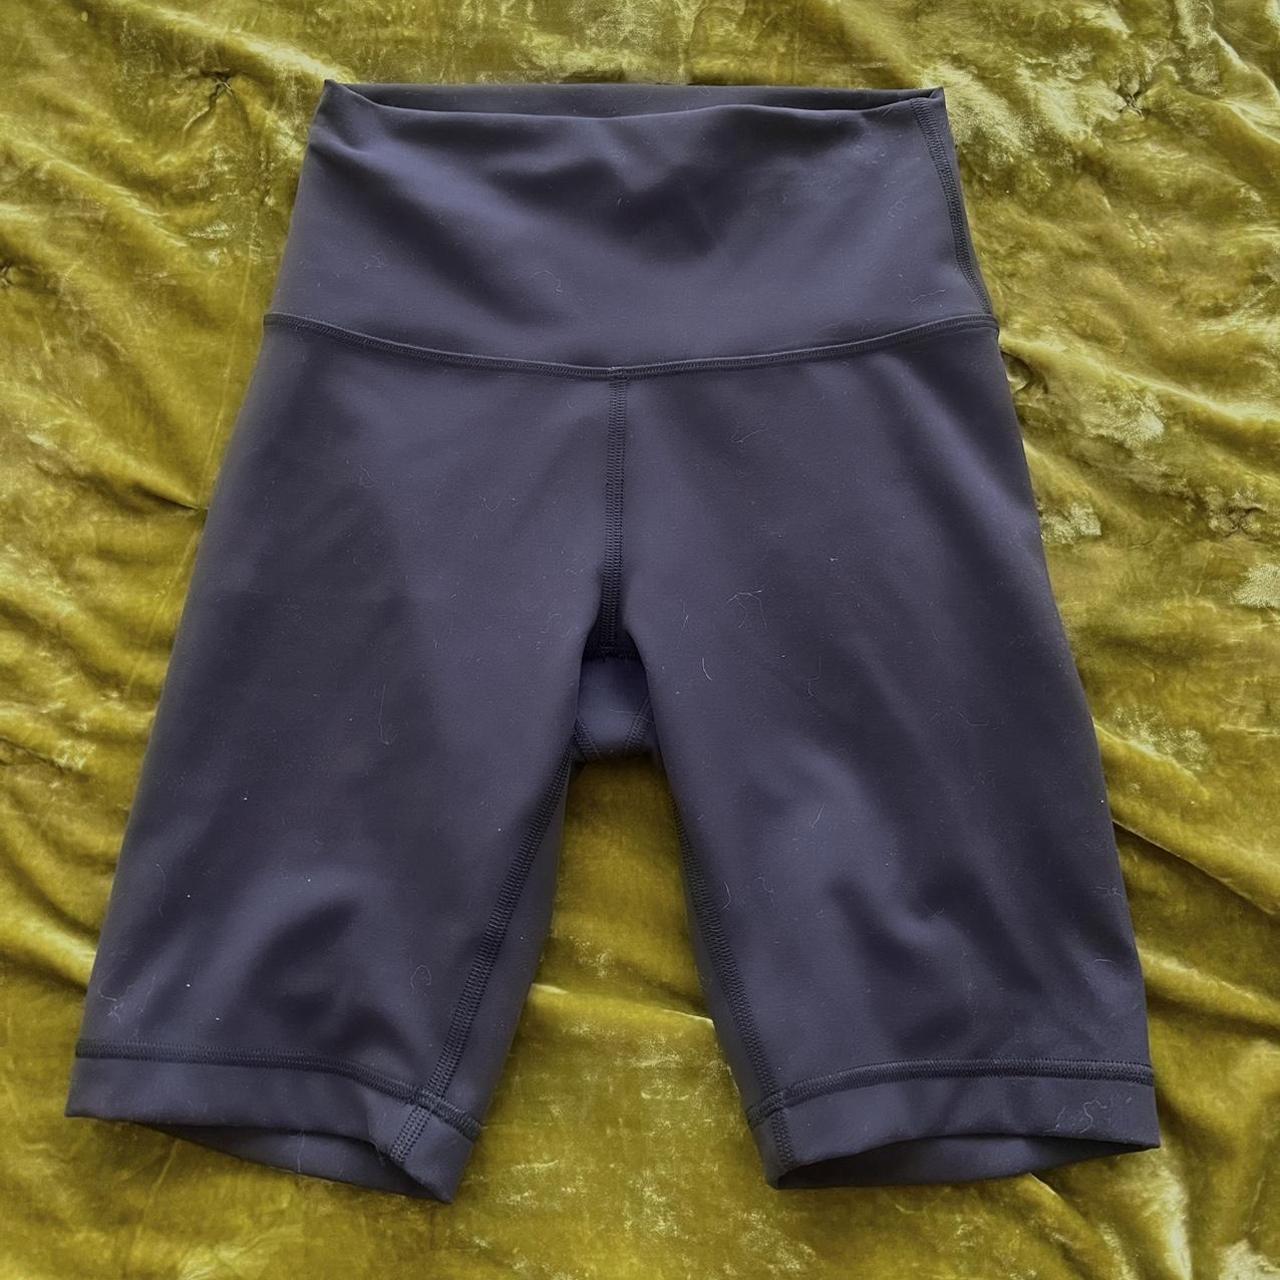 lulu lemon biker shorts/ 8 inch inseam/ wmns sz - Depop